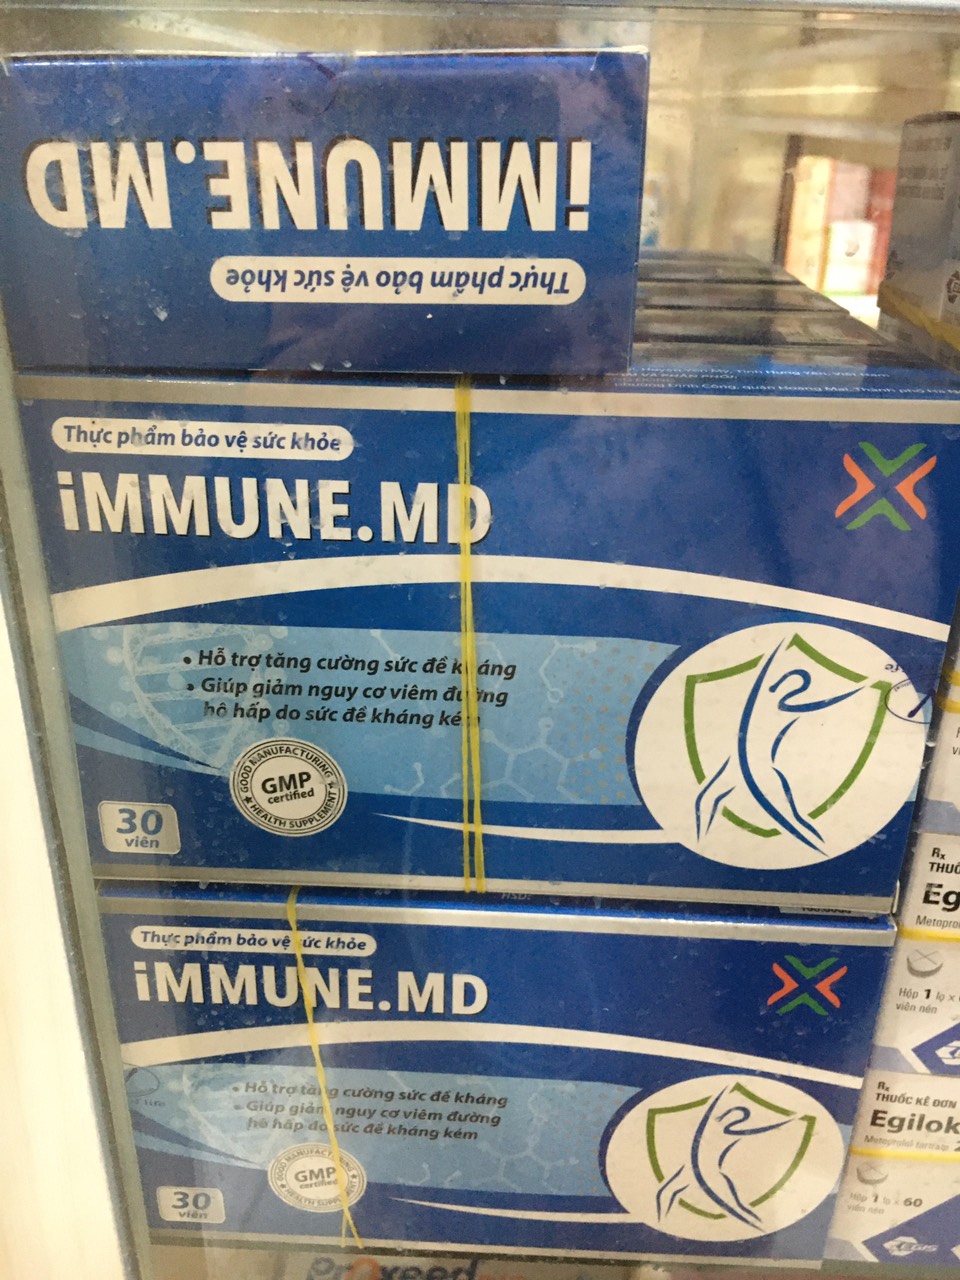 Immune.MD